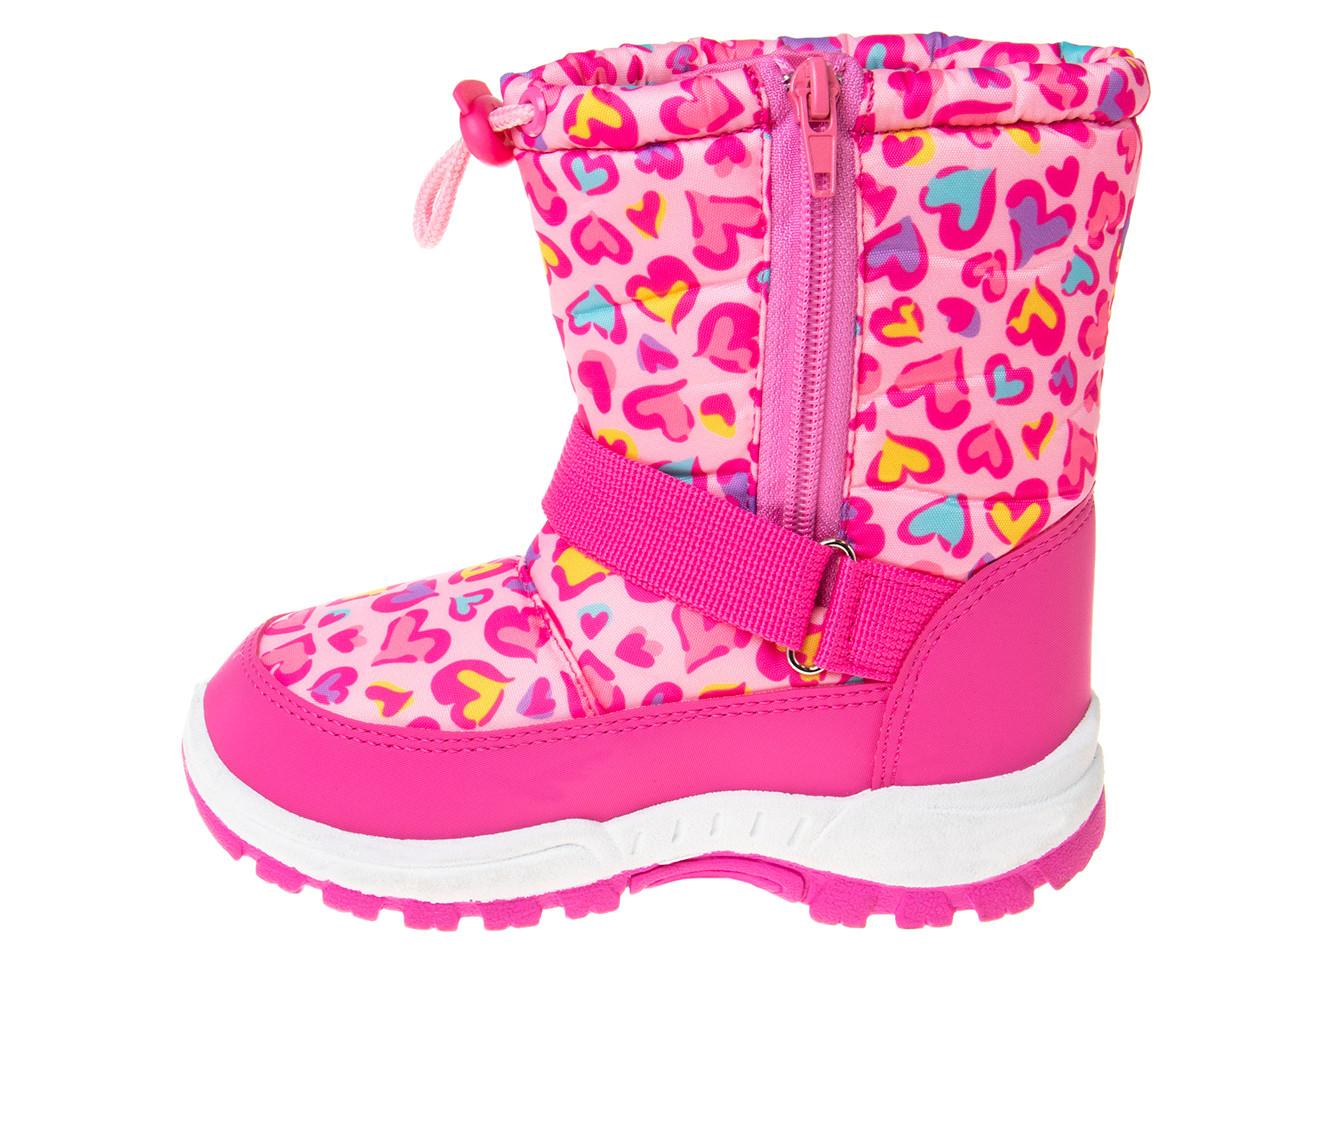 Girls' Rugged Bear Toddler & Little Kid Heart of Hearties Winter Boots